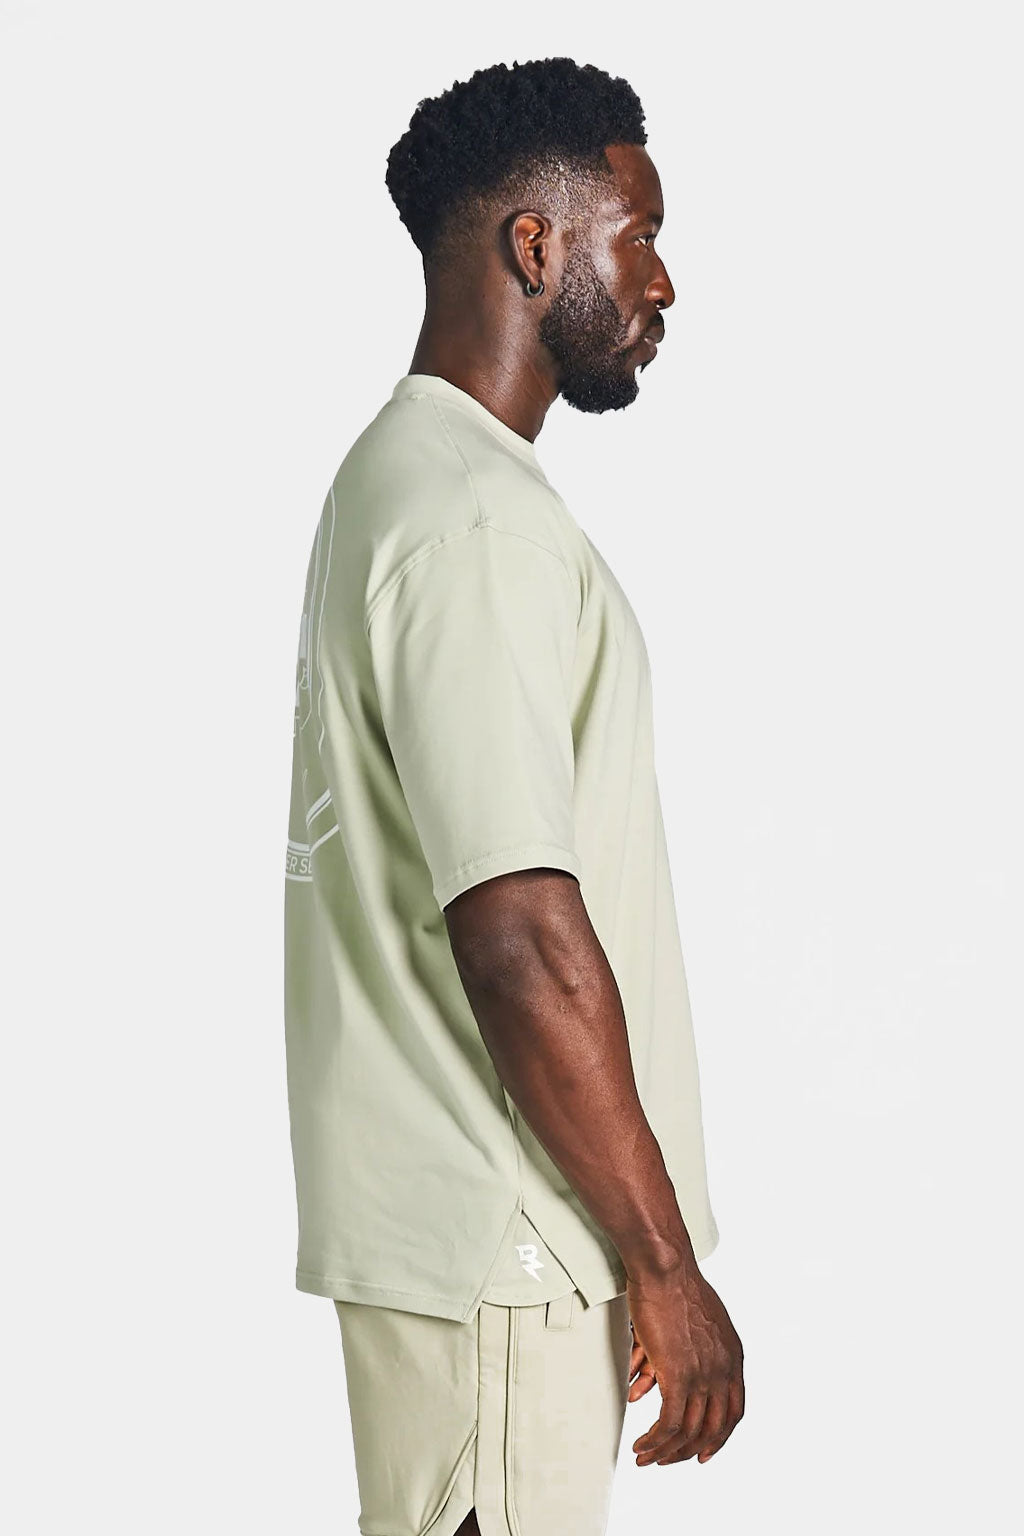 Rzsit - Never Settle Men's Oversized Drop-shoulder T-shirt